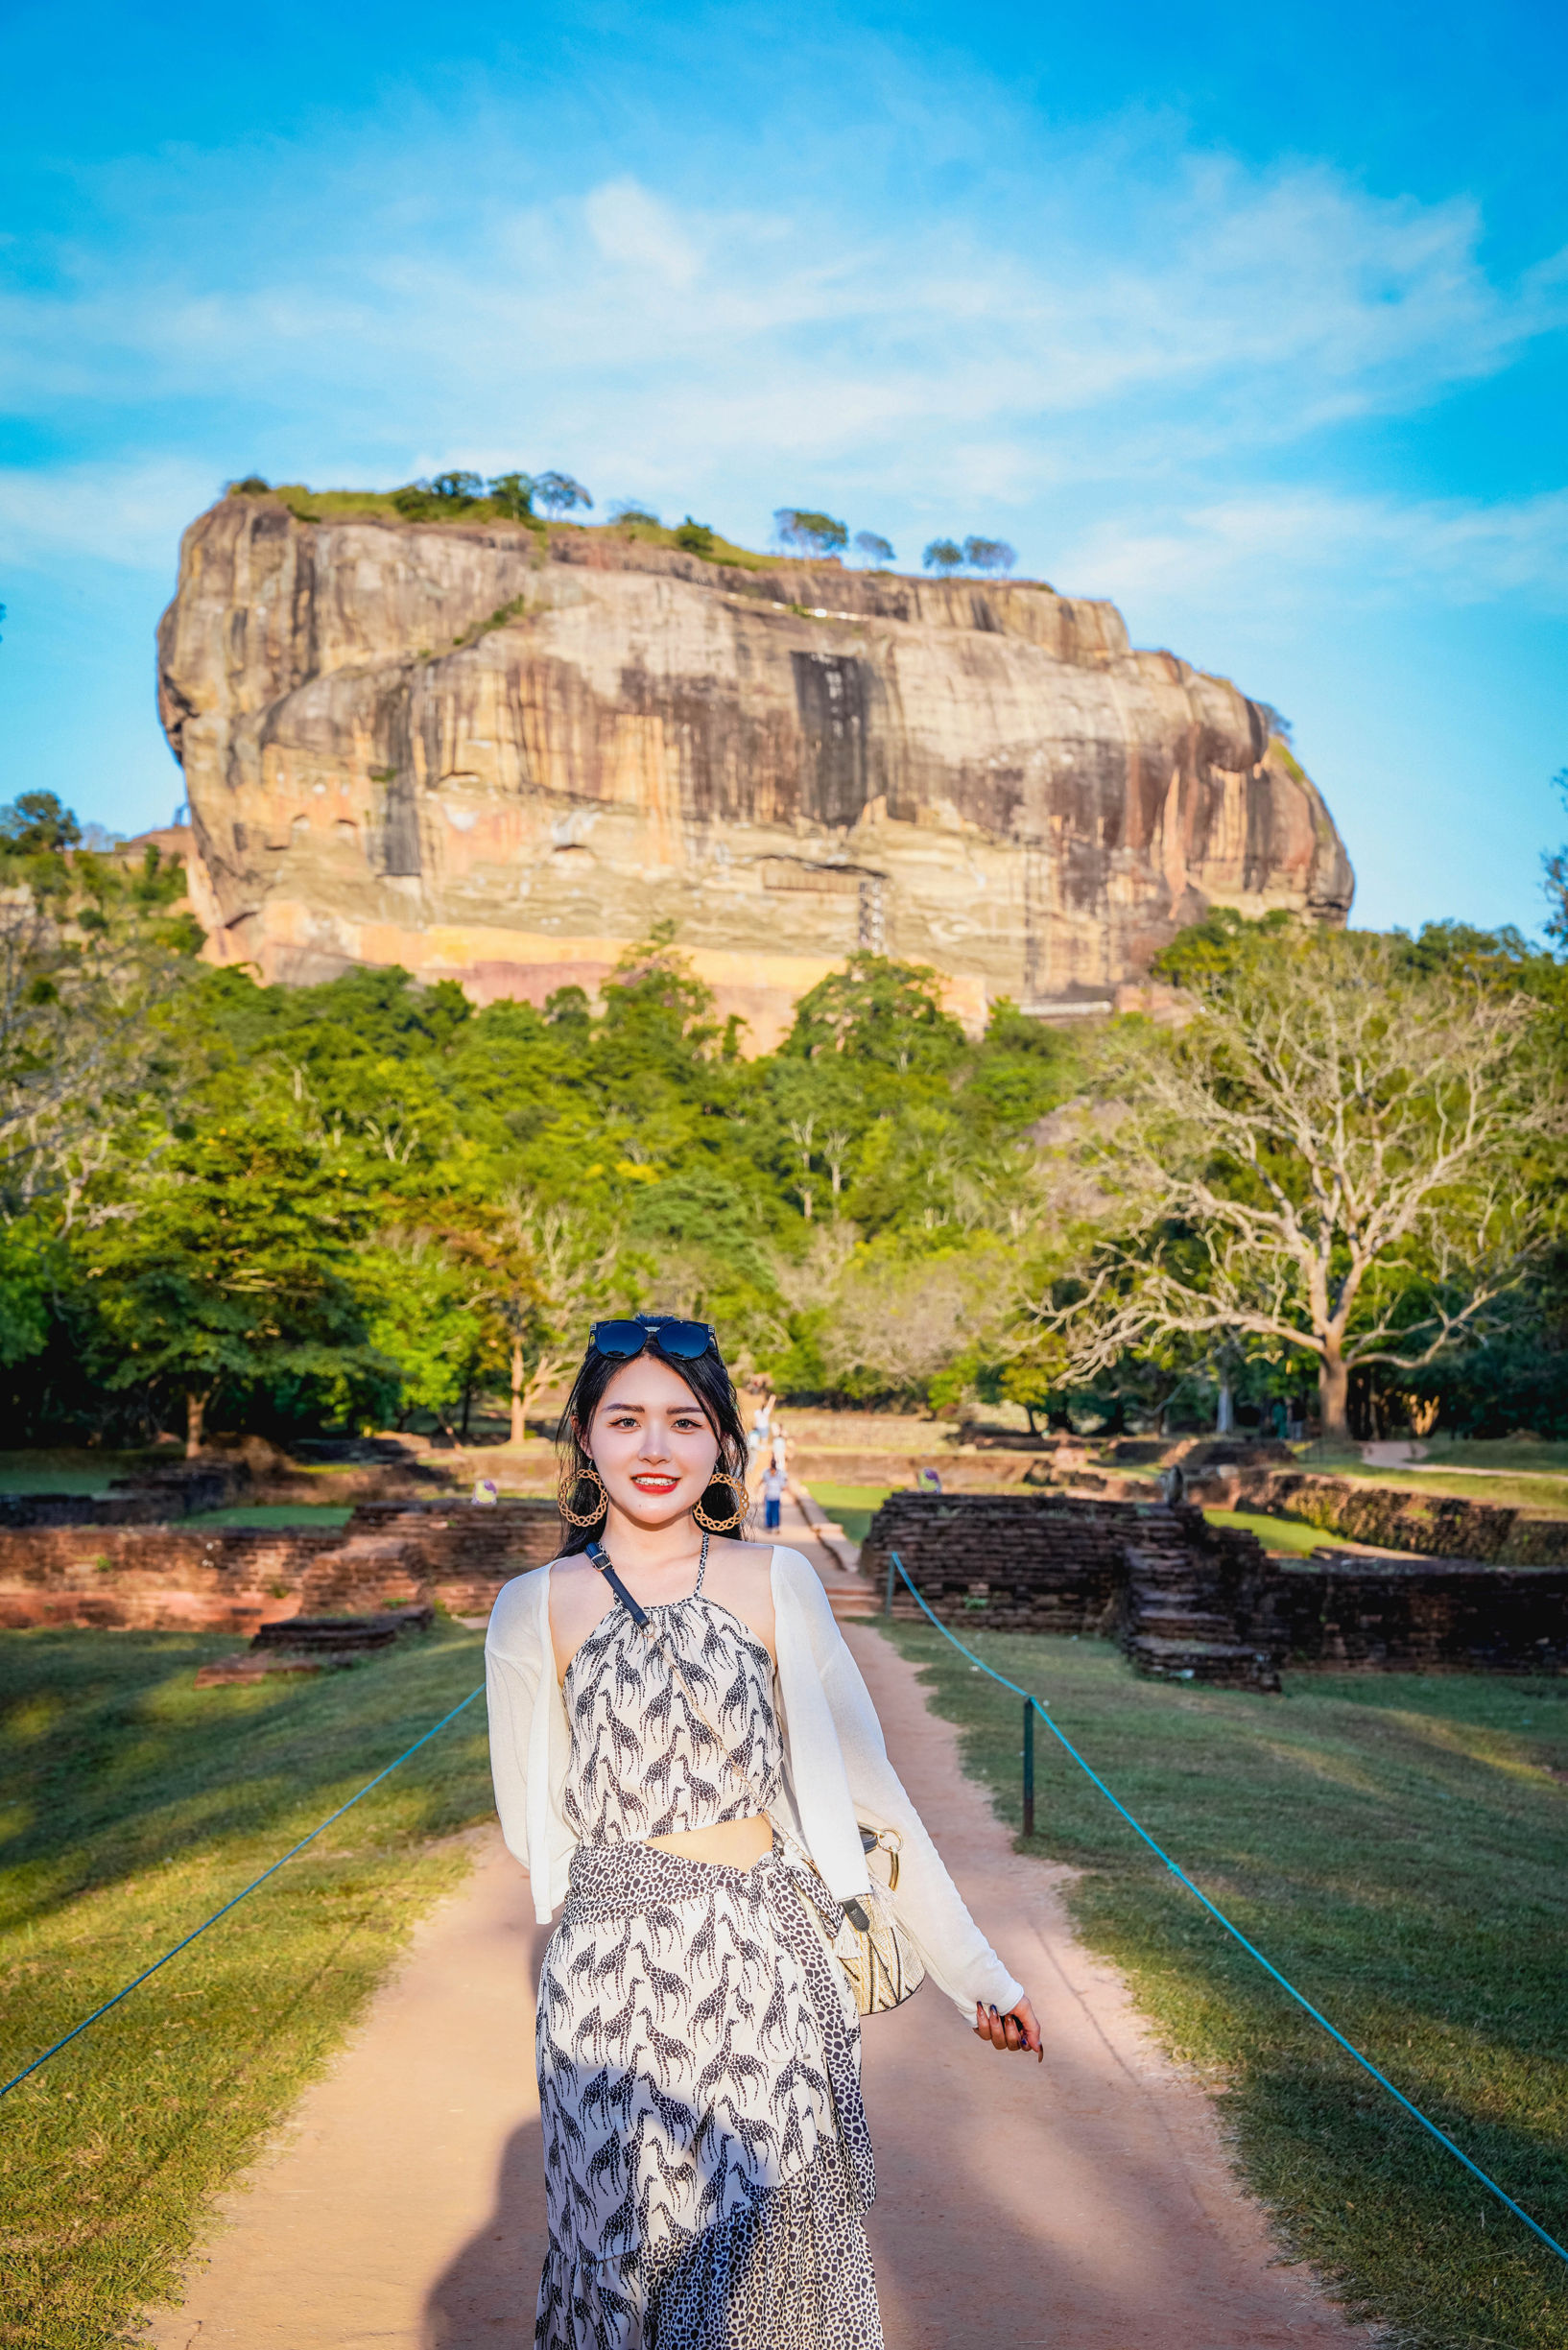 斯里兰卡狮子岩｜世界第八大奇迹天空之城俯瞰热带雨林   没来斯里兰卡前早已听说过狮子岩的震撼 斯里兰